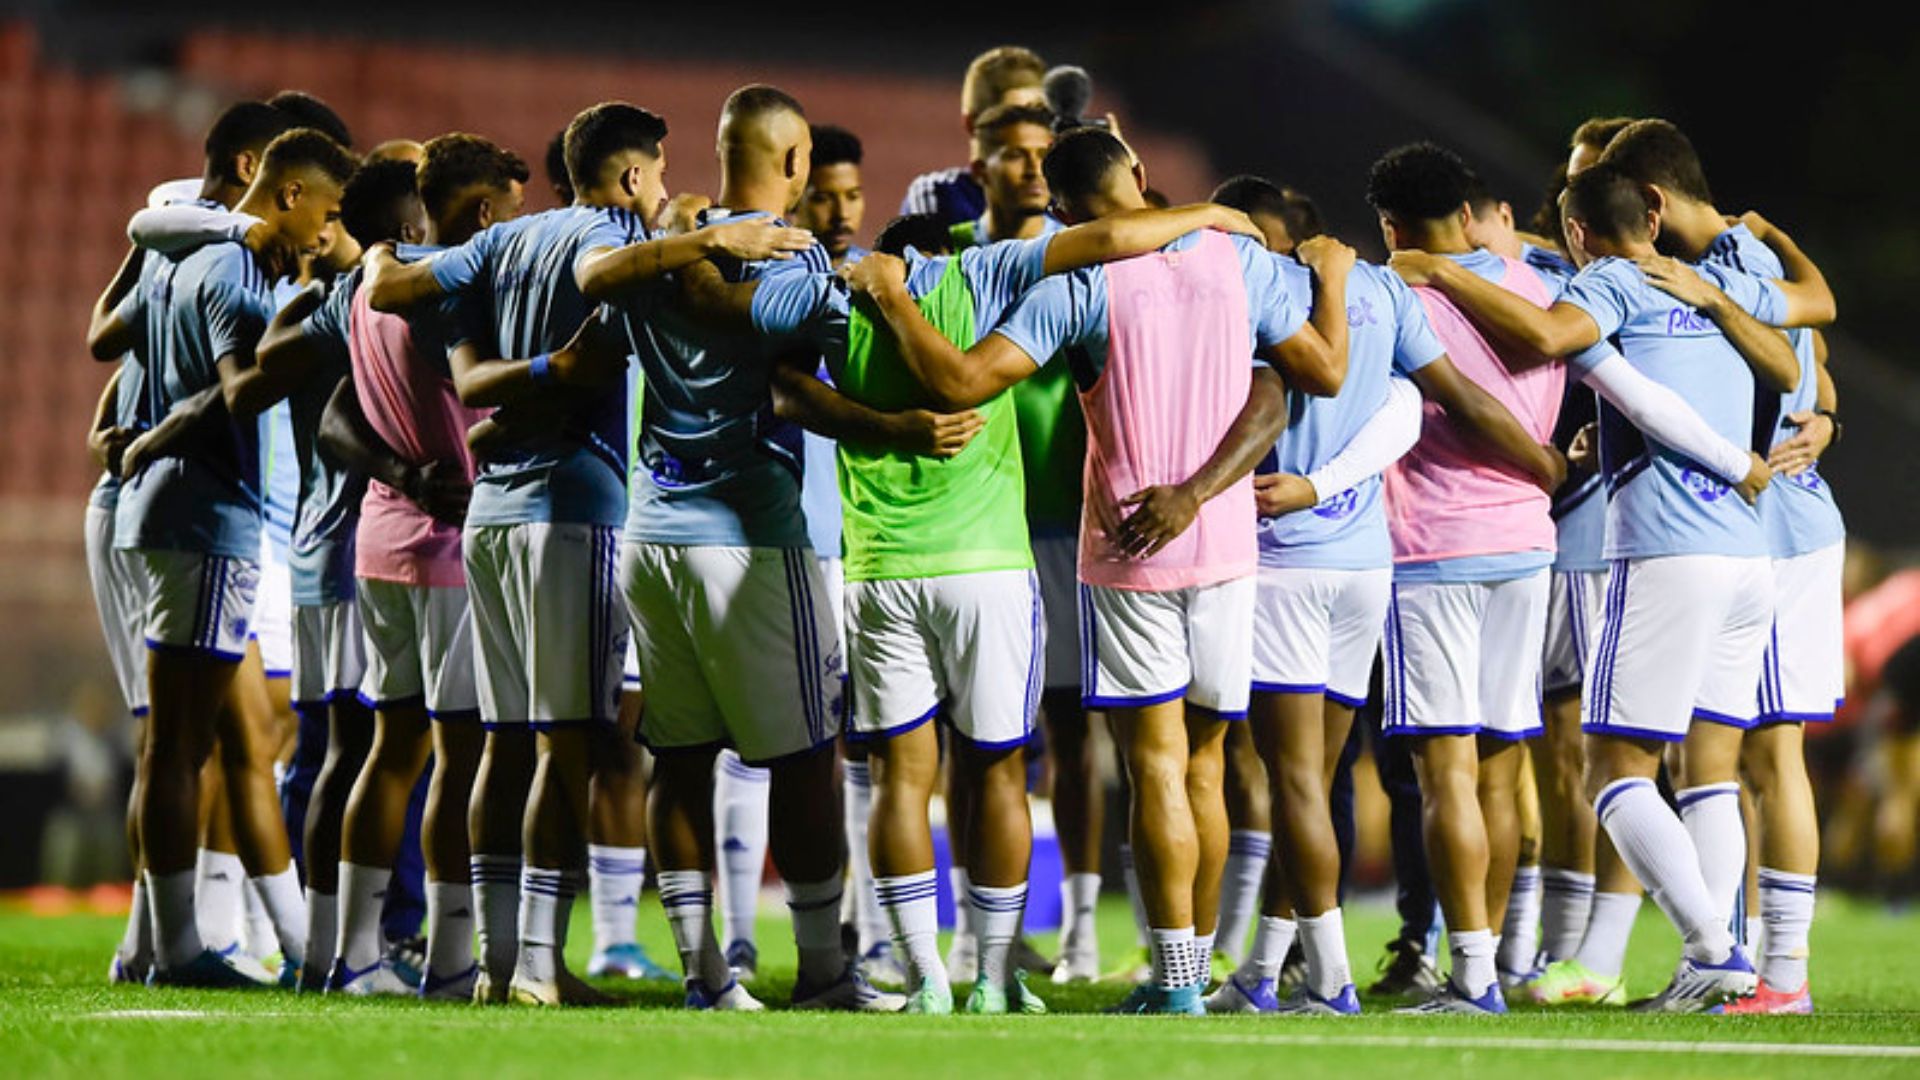 Jogadores do Cruzeiro reunidos em campo antes da partida contra o Ituano